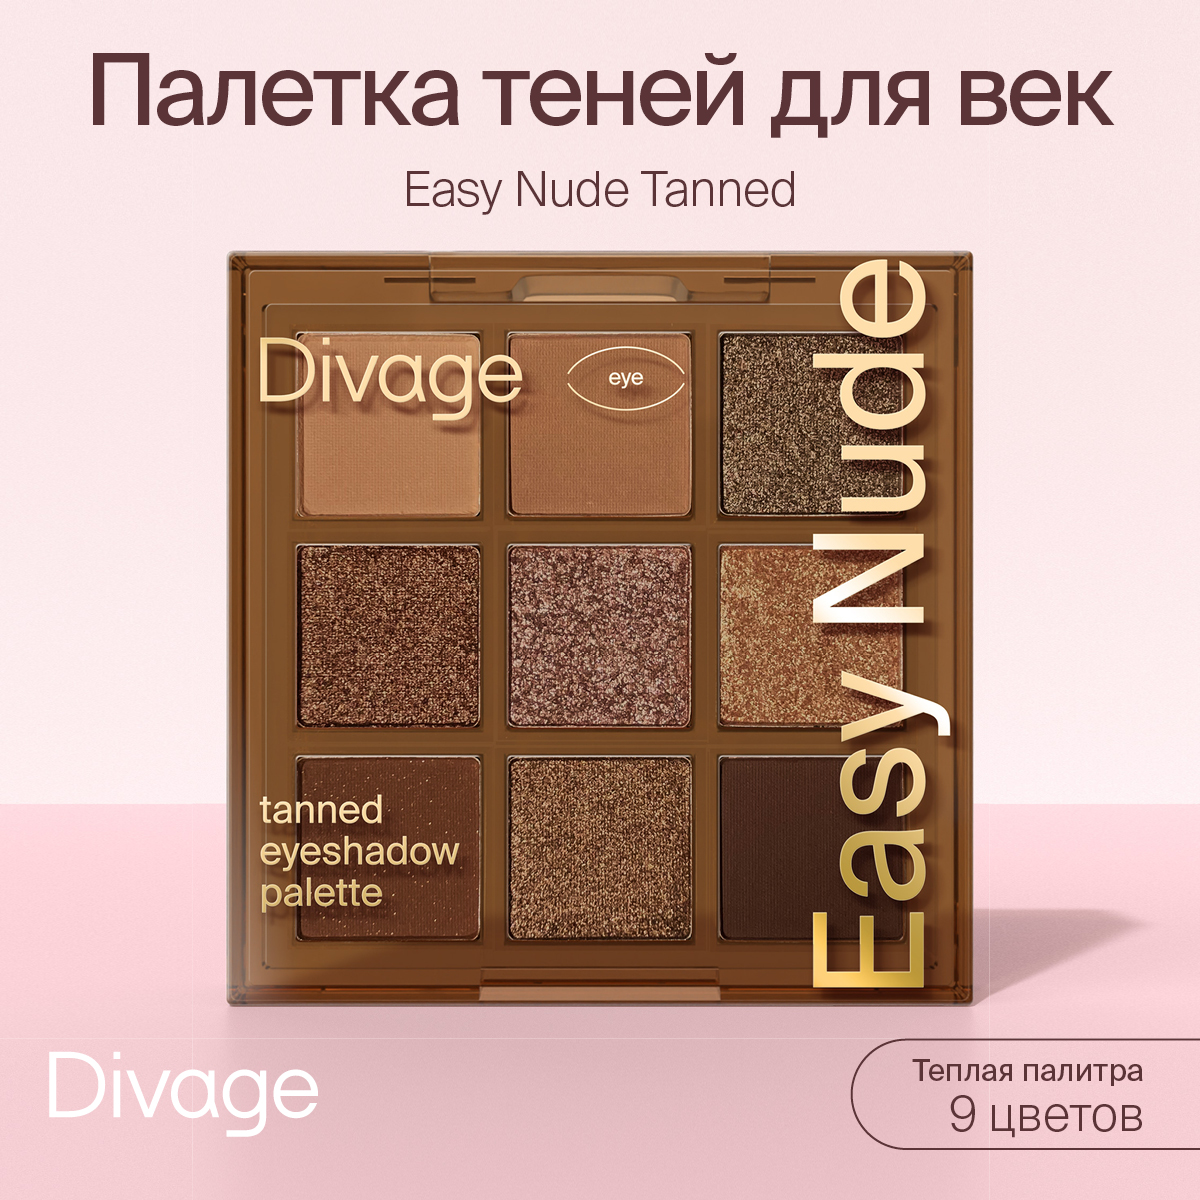 Палетка теней для век DIVAGE Easy Nude Tanned eyeshadow palette 9г